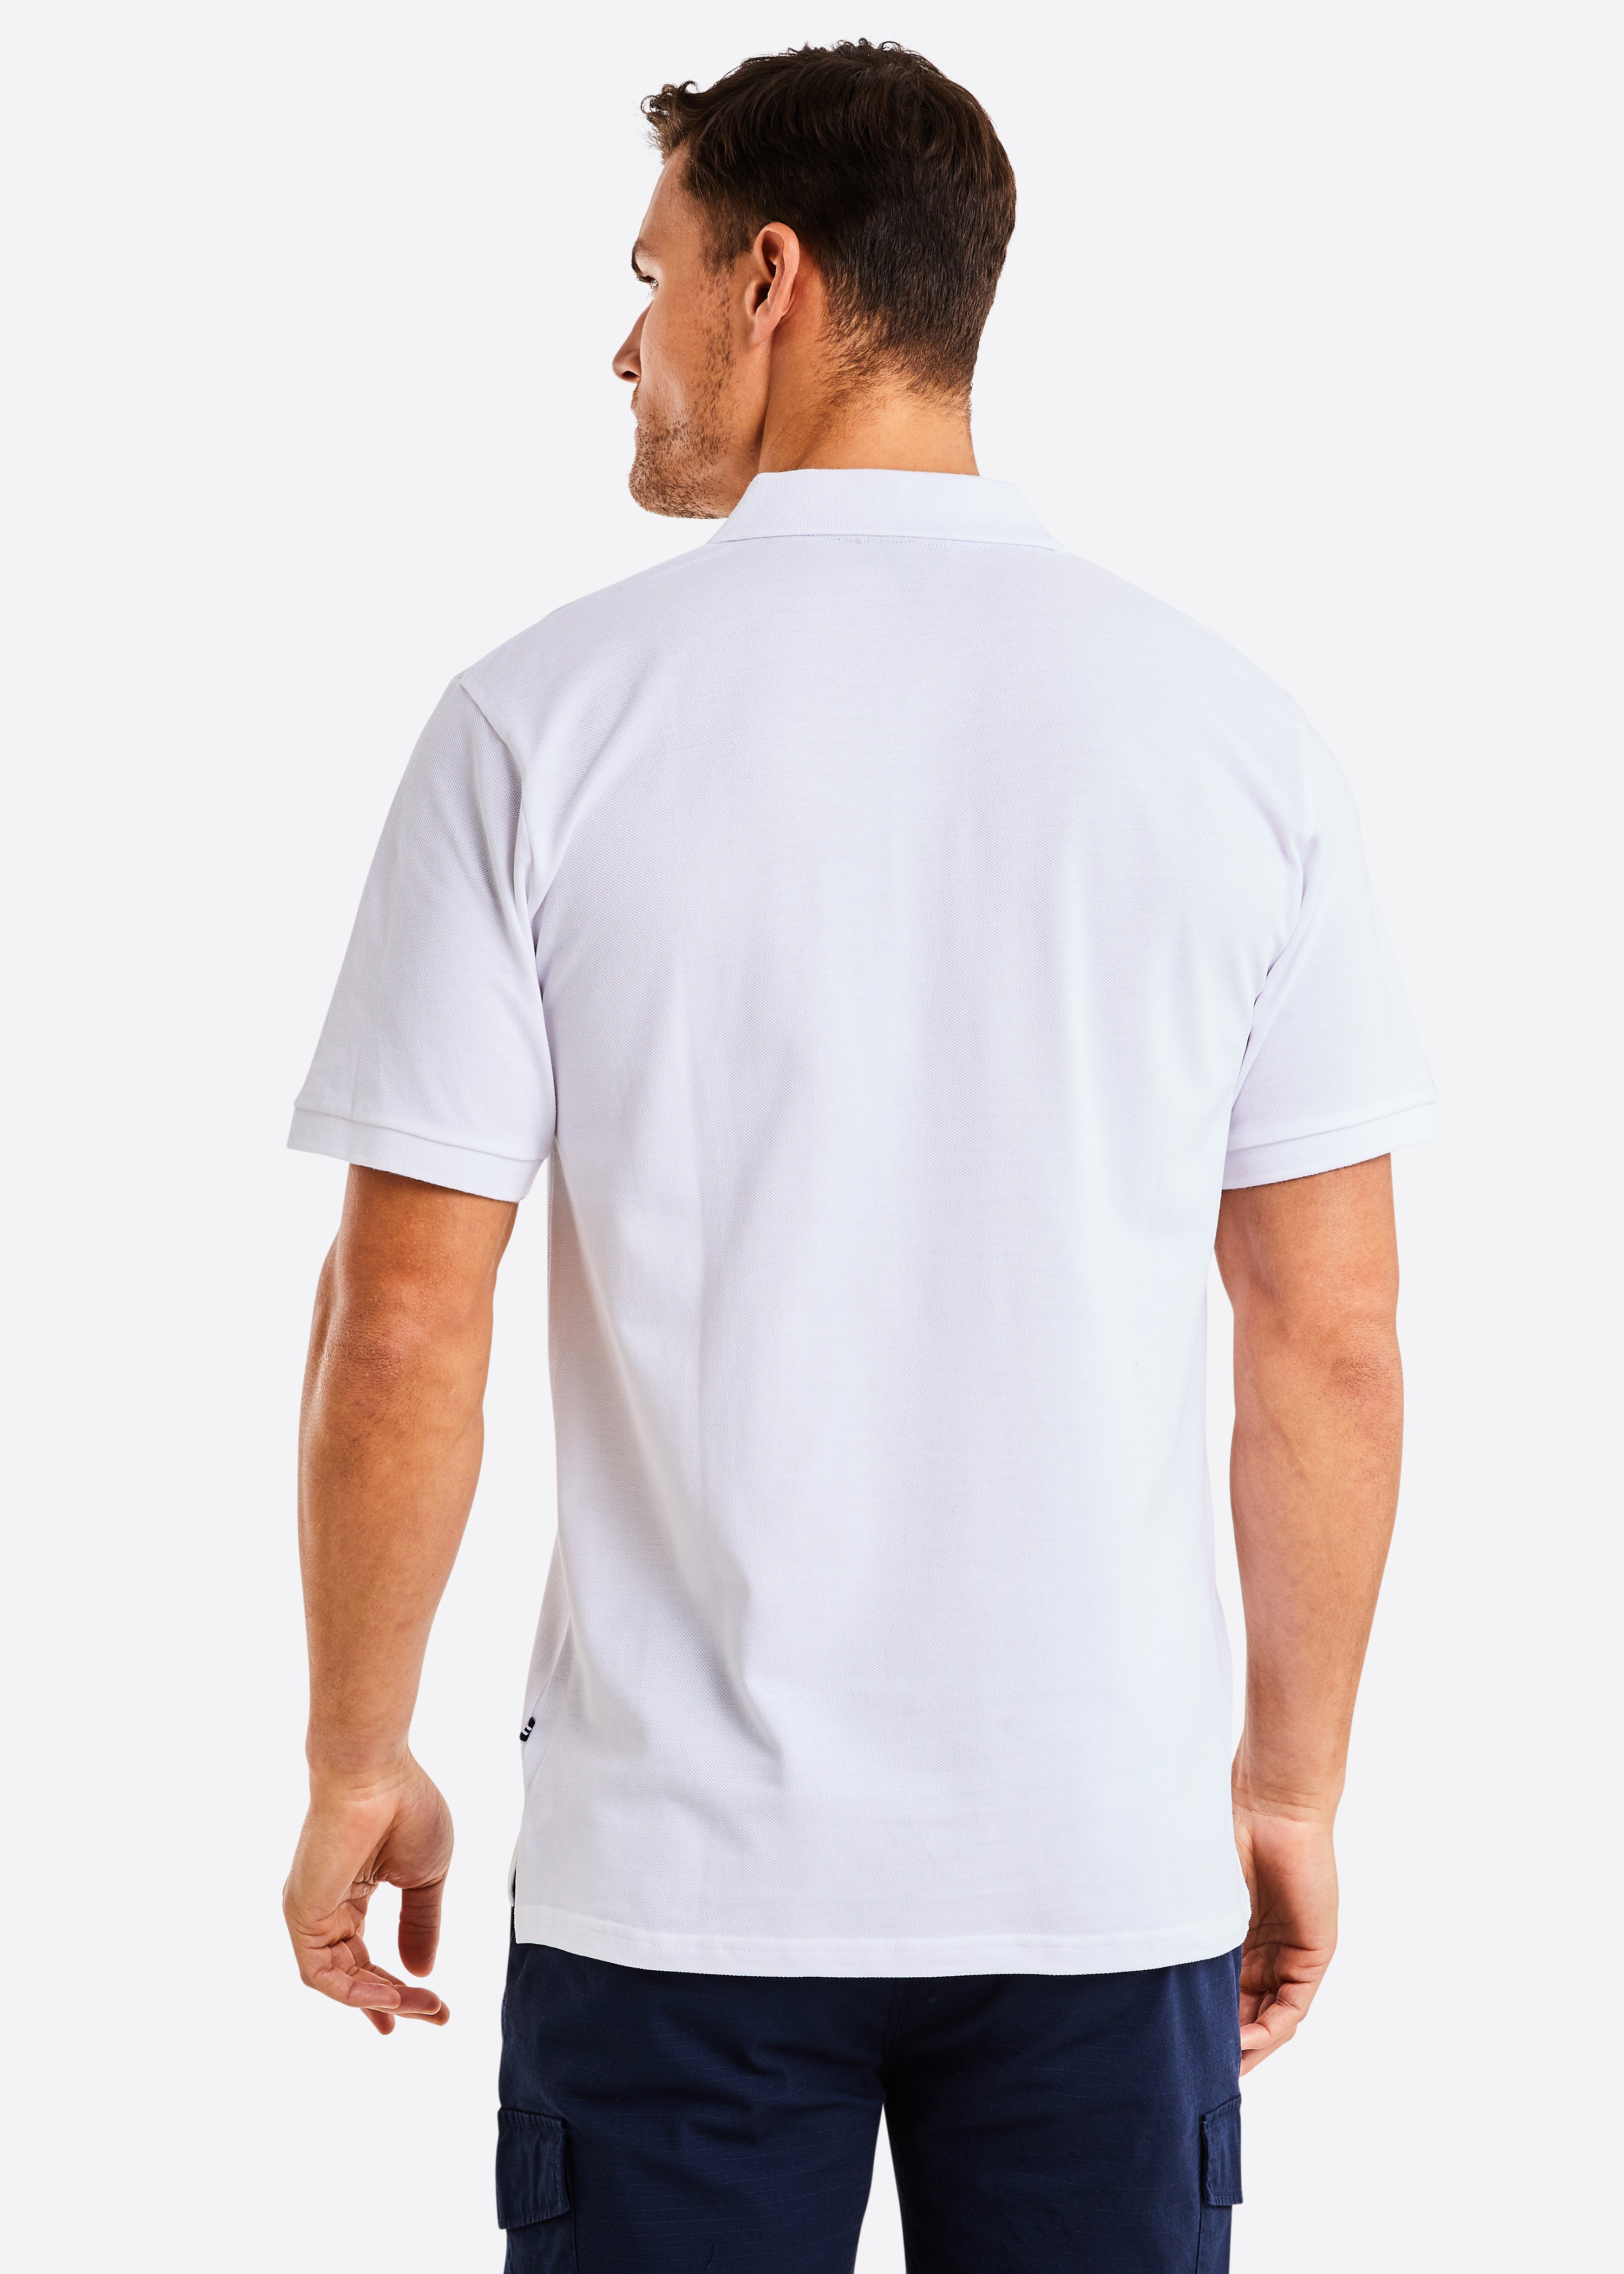 Calder Polo Shirt